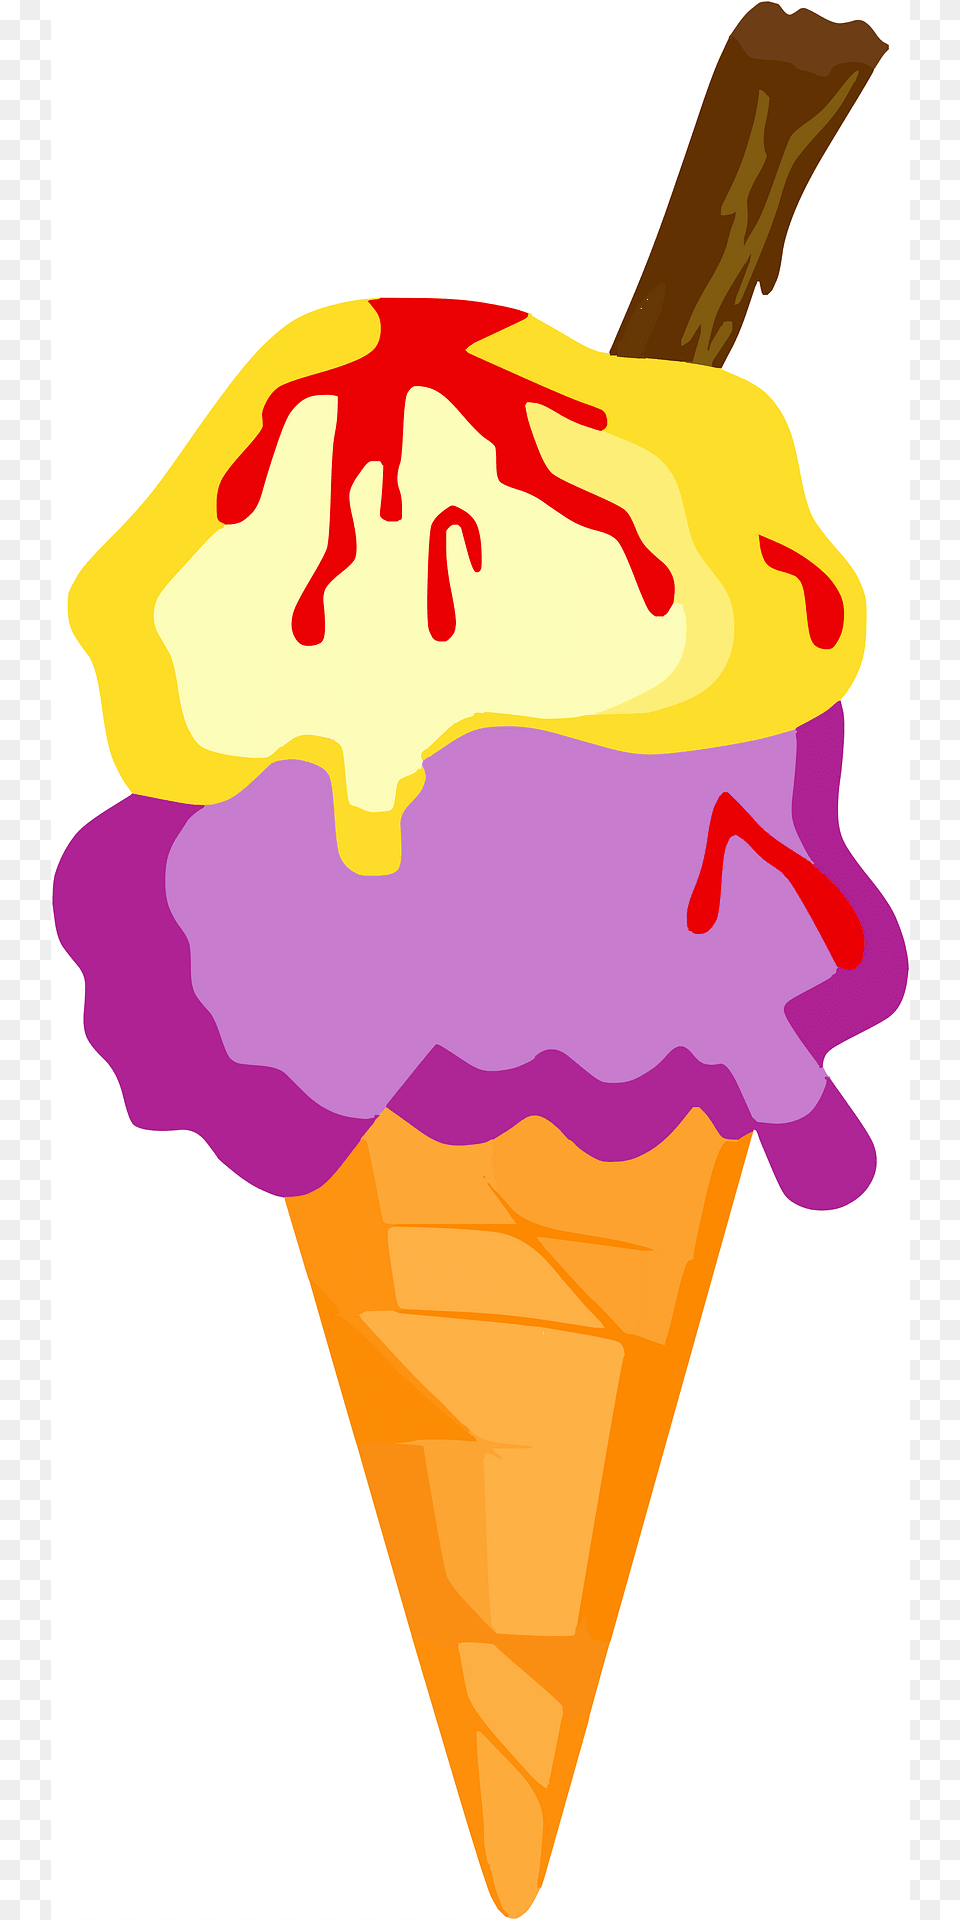 Ice Cream Cone Clipart, Dessert, Food, Ice Cream, Animal Png Image